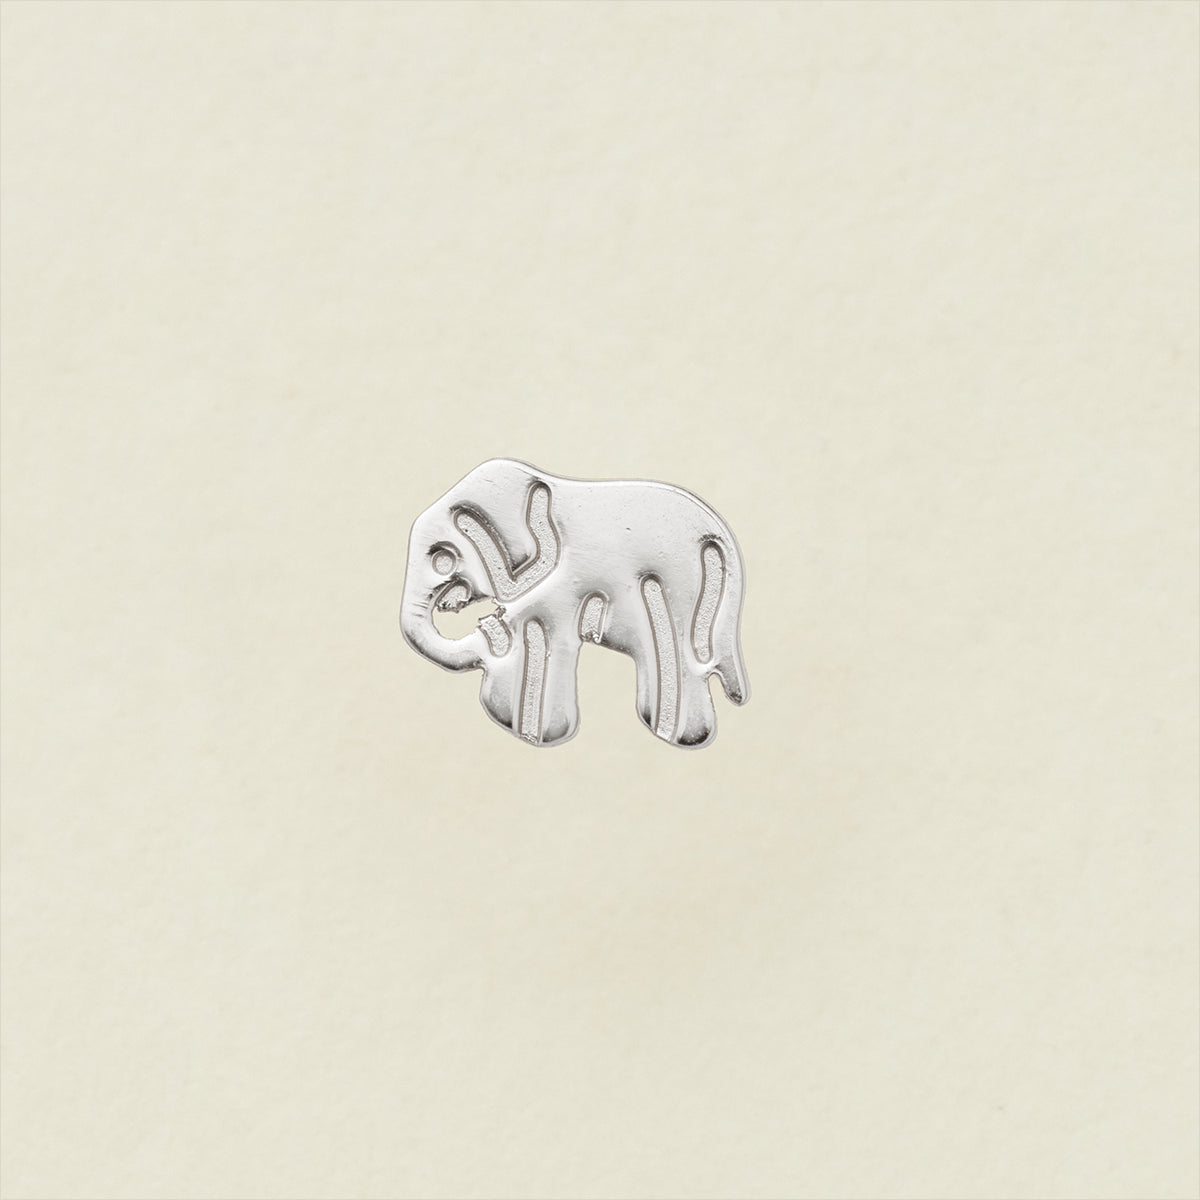 Lucky Stud Earring Silver / Elephant Earring